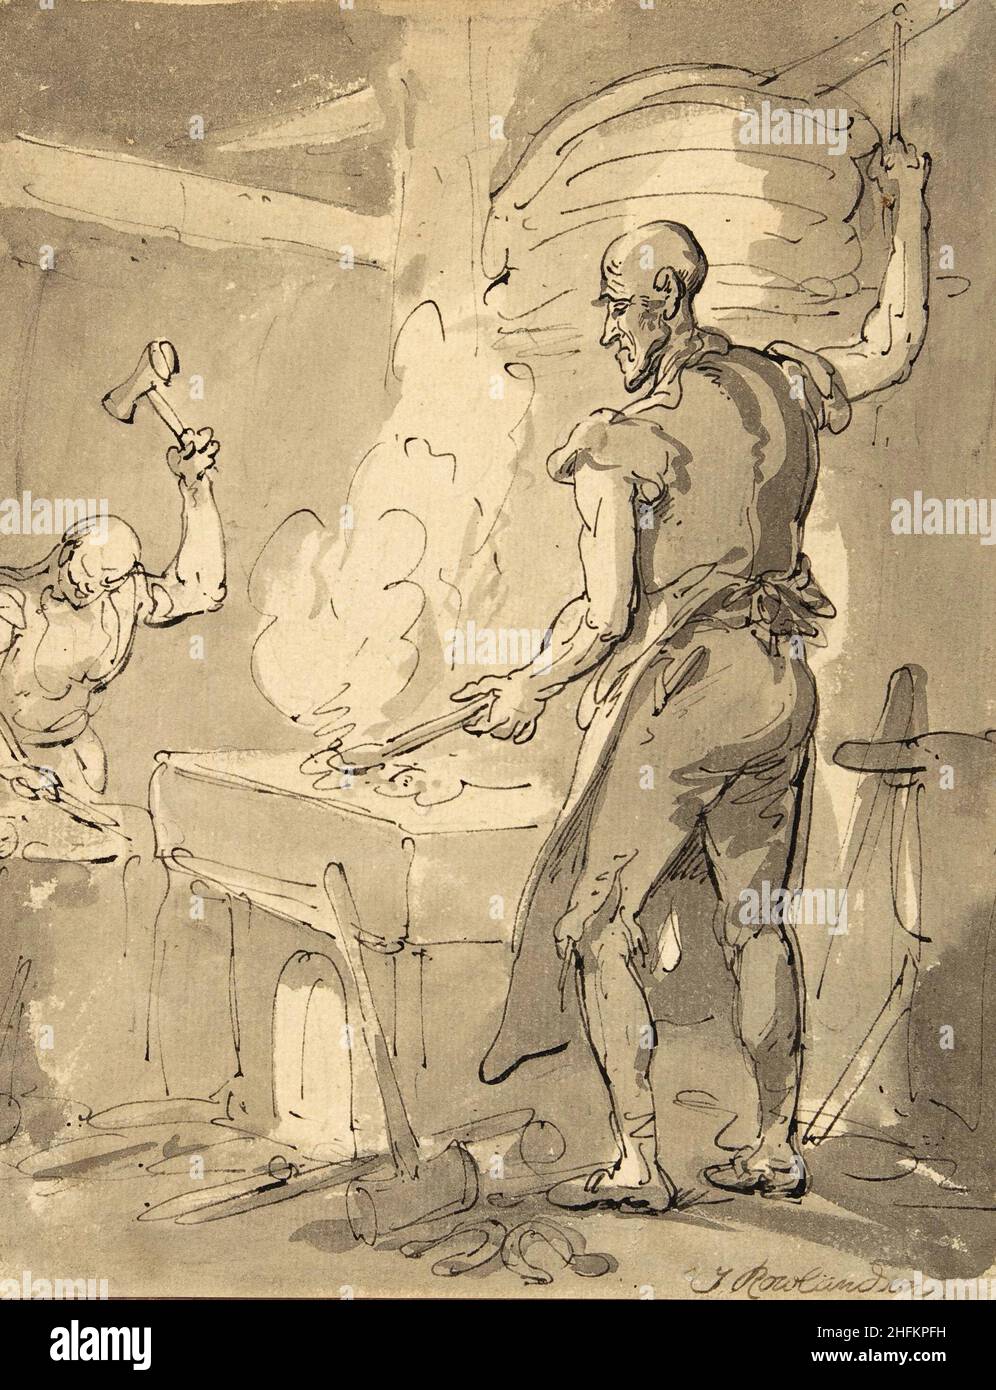 Un fabbro. Artista: Thomas Rowlandson (1756-1827) artista e caricaturista inglese dell'epoca georgiana. Osservatore sociale, è stato un artista prolifico e tipografo. Credit: Thomas Rowlandson/Alamy Foto Stock